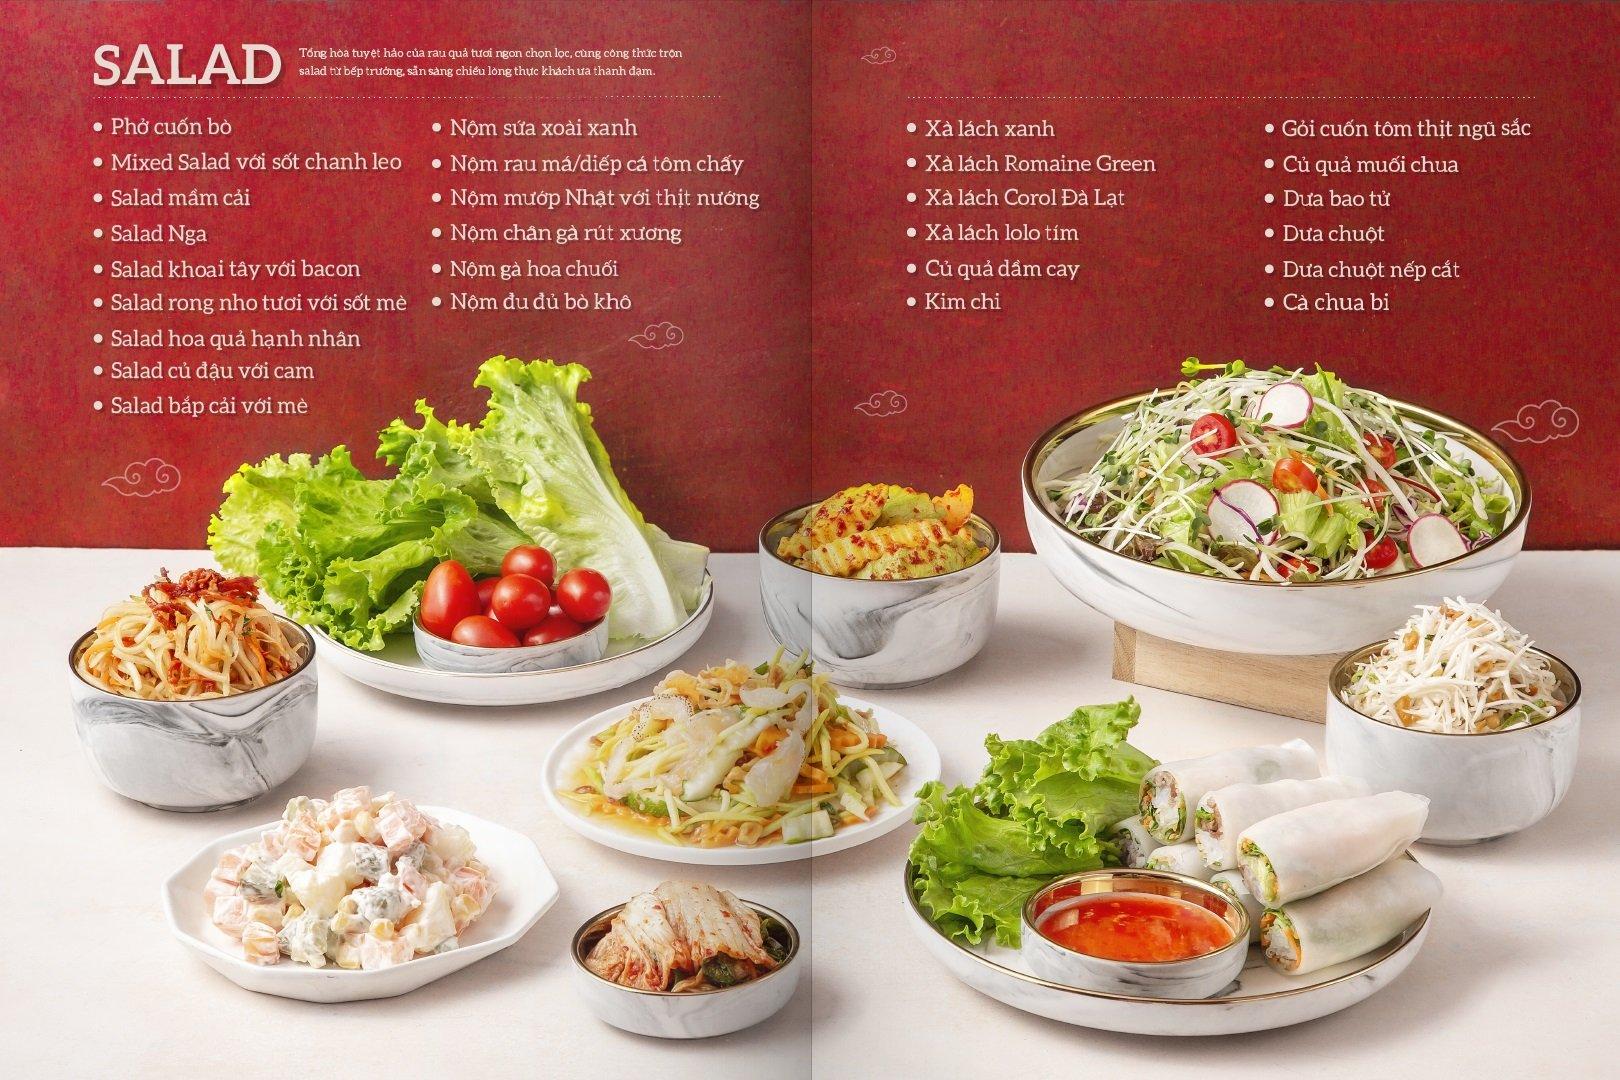 Tại Cửu Vân Long có vô vàn món salad để bạn thỏa sức lựa chọn (ảnh: Internet)